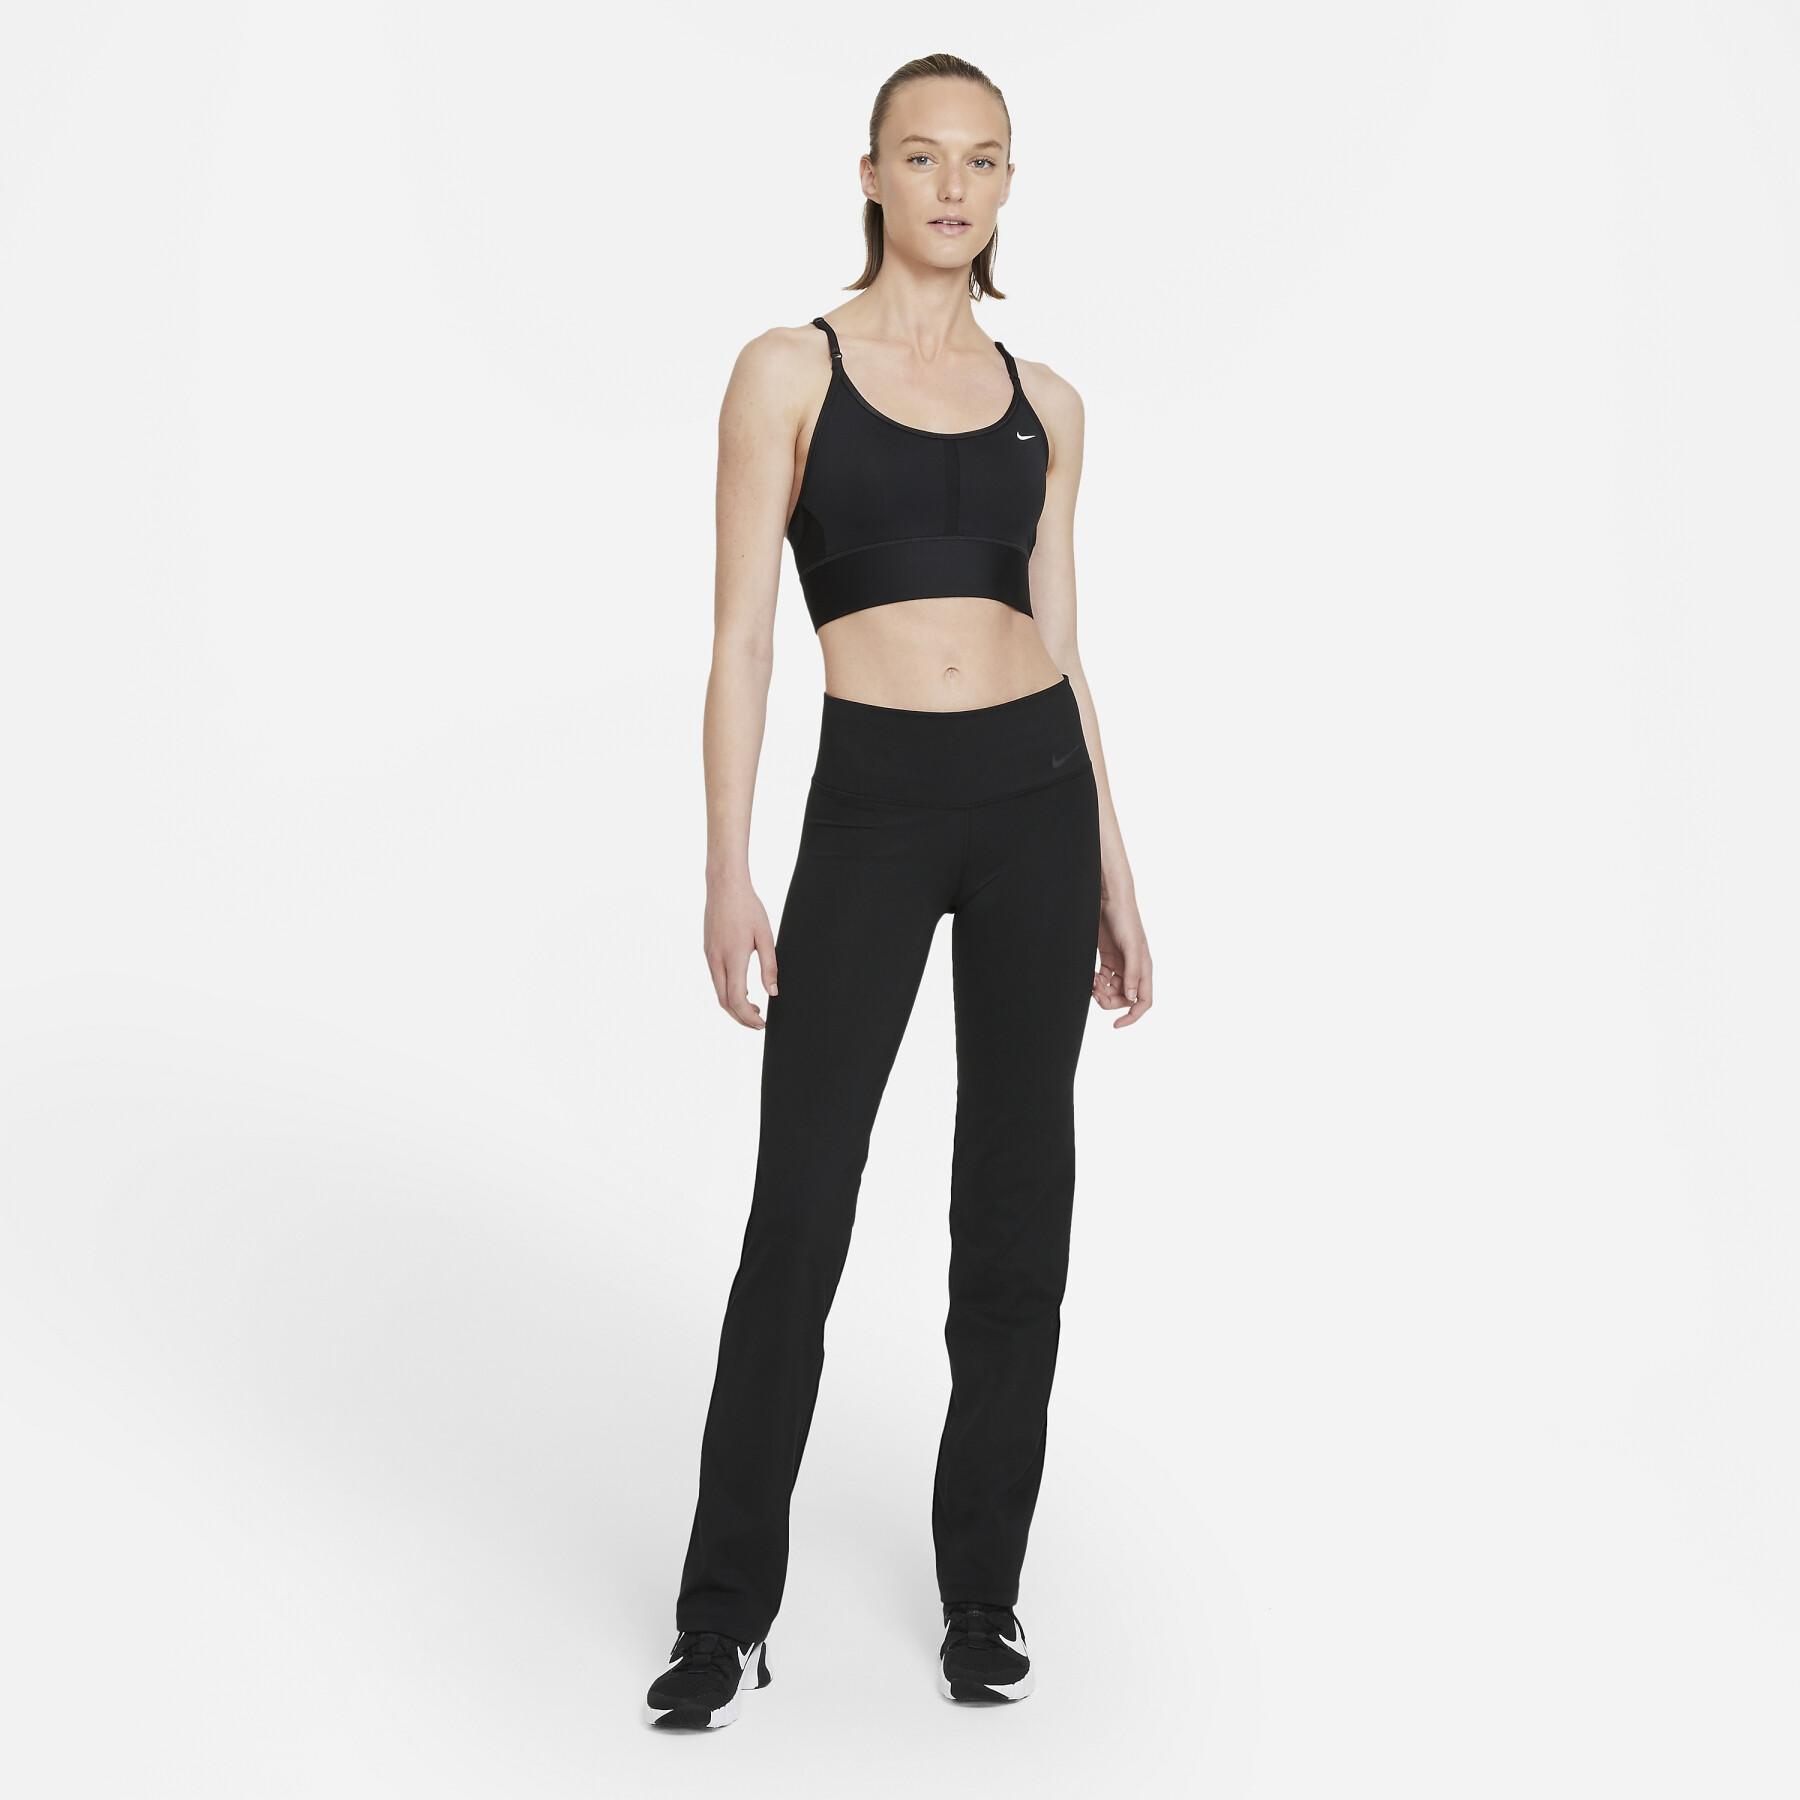 Pantalón de jogging mujer Nike Dri-Fit Power classic